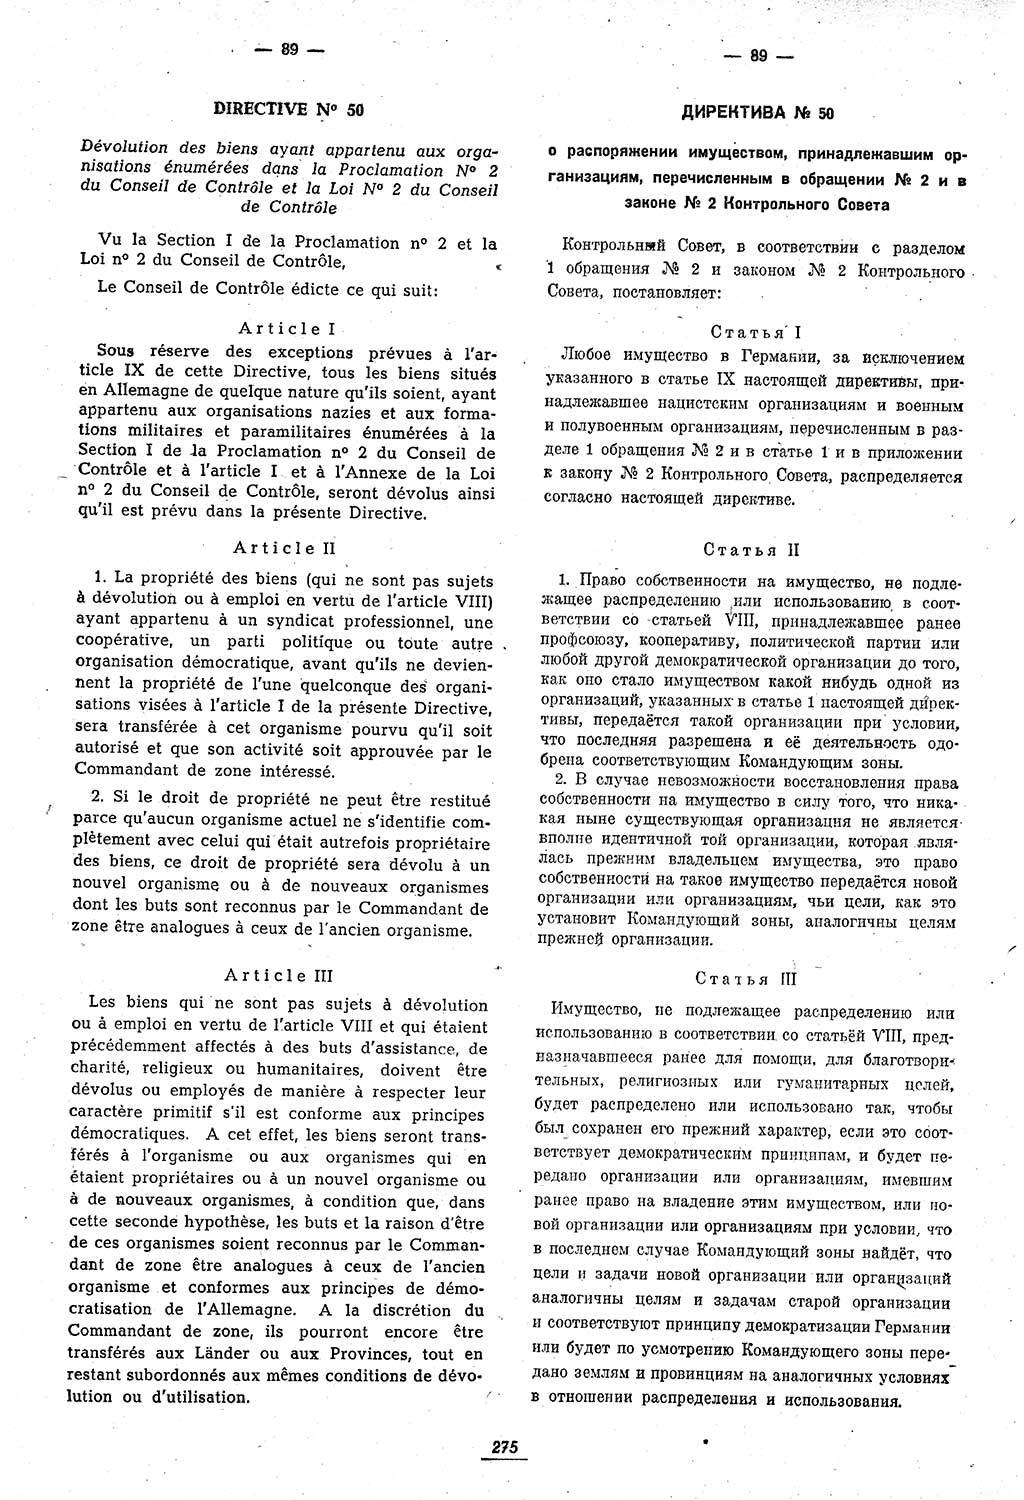 Amtsblatt des Kontrollrats (ABlKR) in Deutschland 1947, Seite 275/1 (ABlKR Dtl. 1947, S. 275/1)